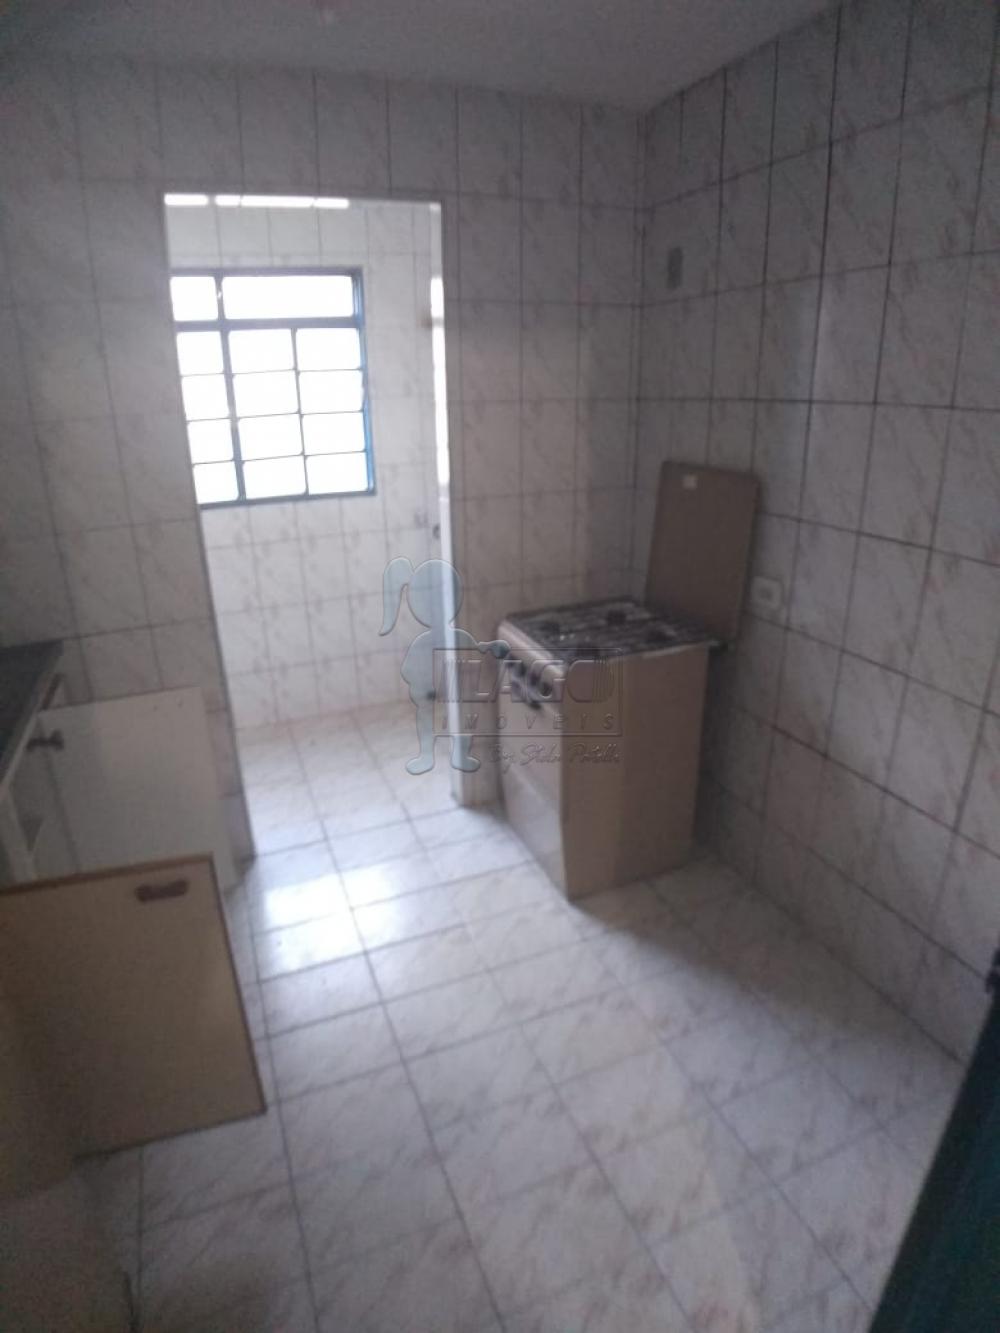 Alugar Apartamentos / Studio / Kitnet em Ribeirão Preto R$ 750,00 - Foto 5